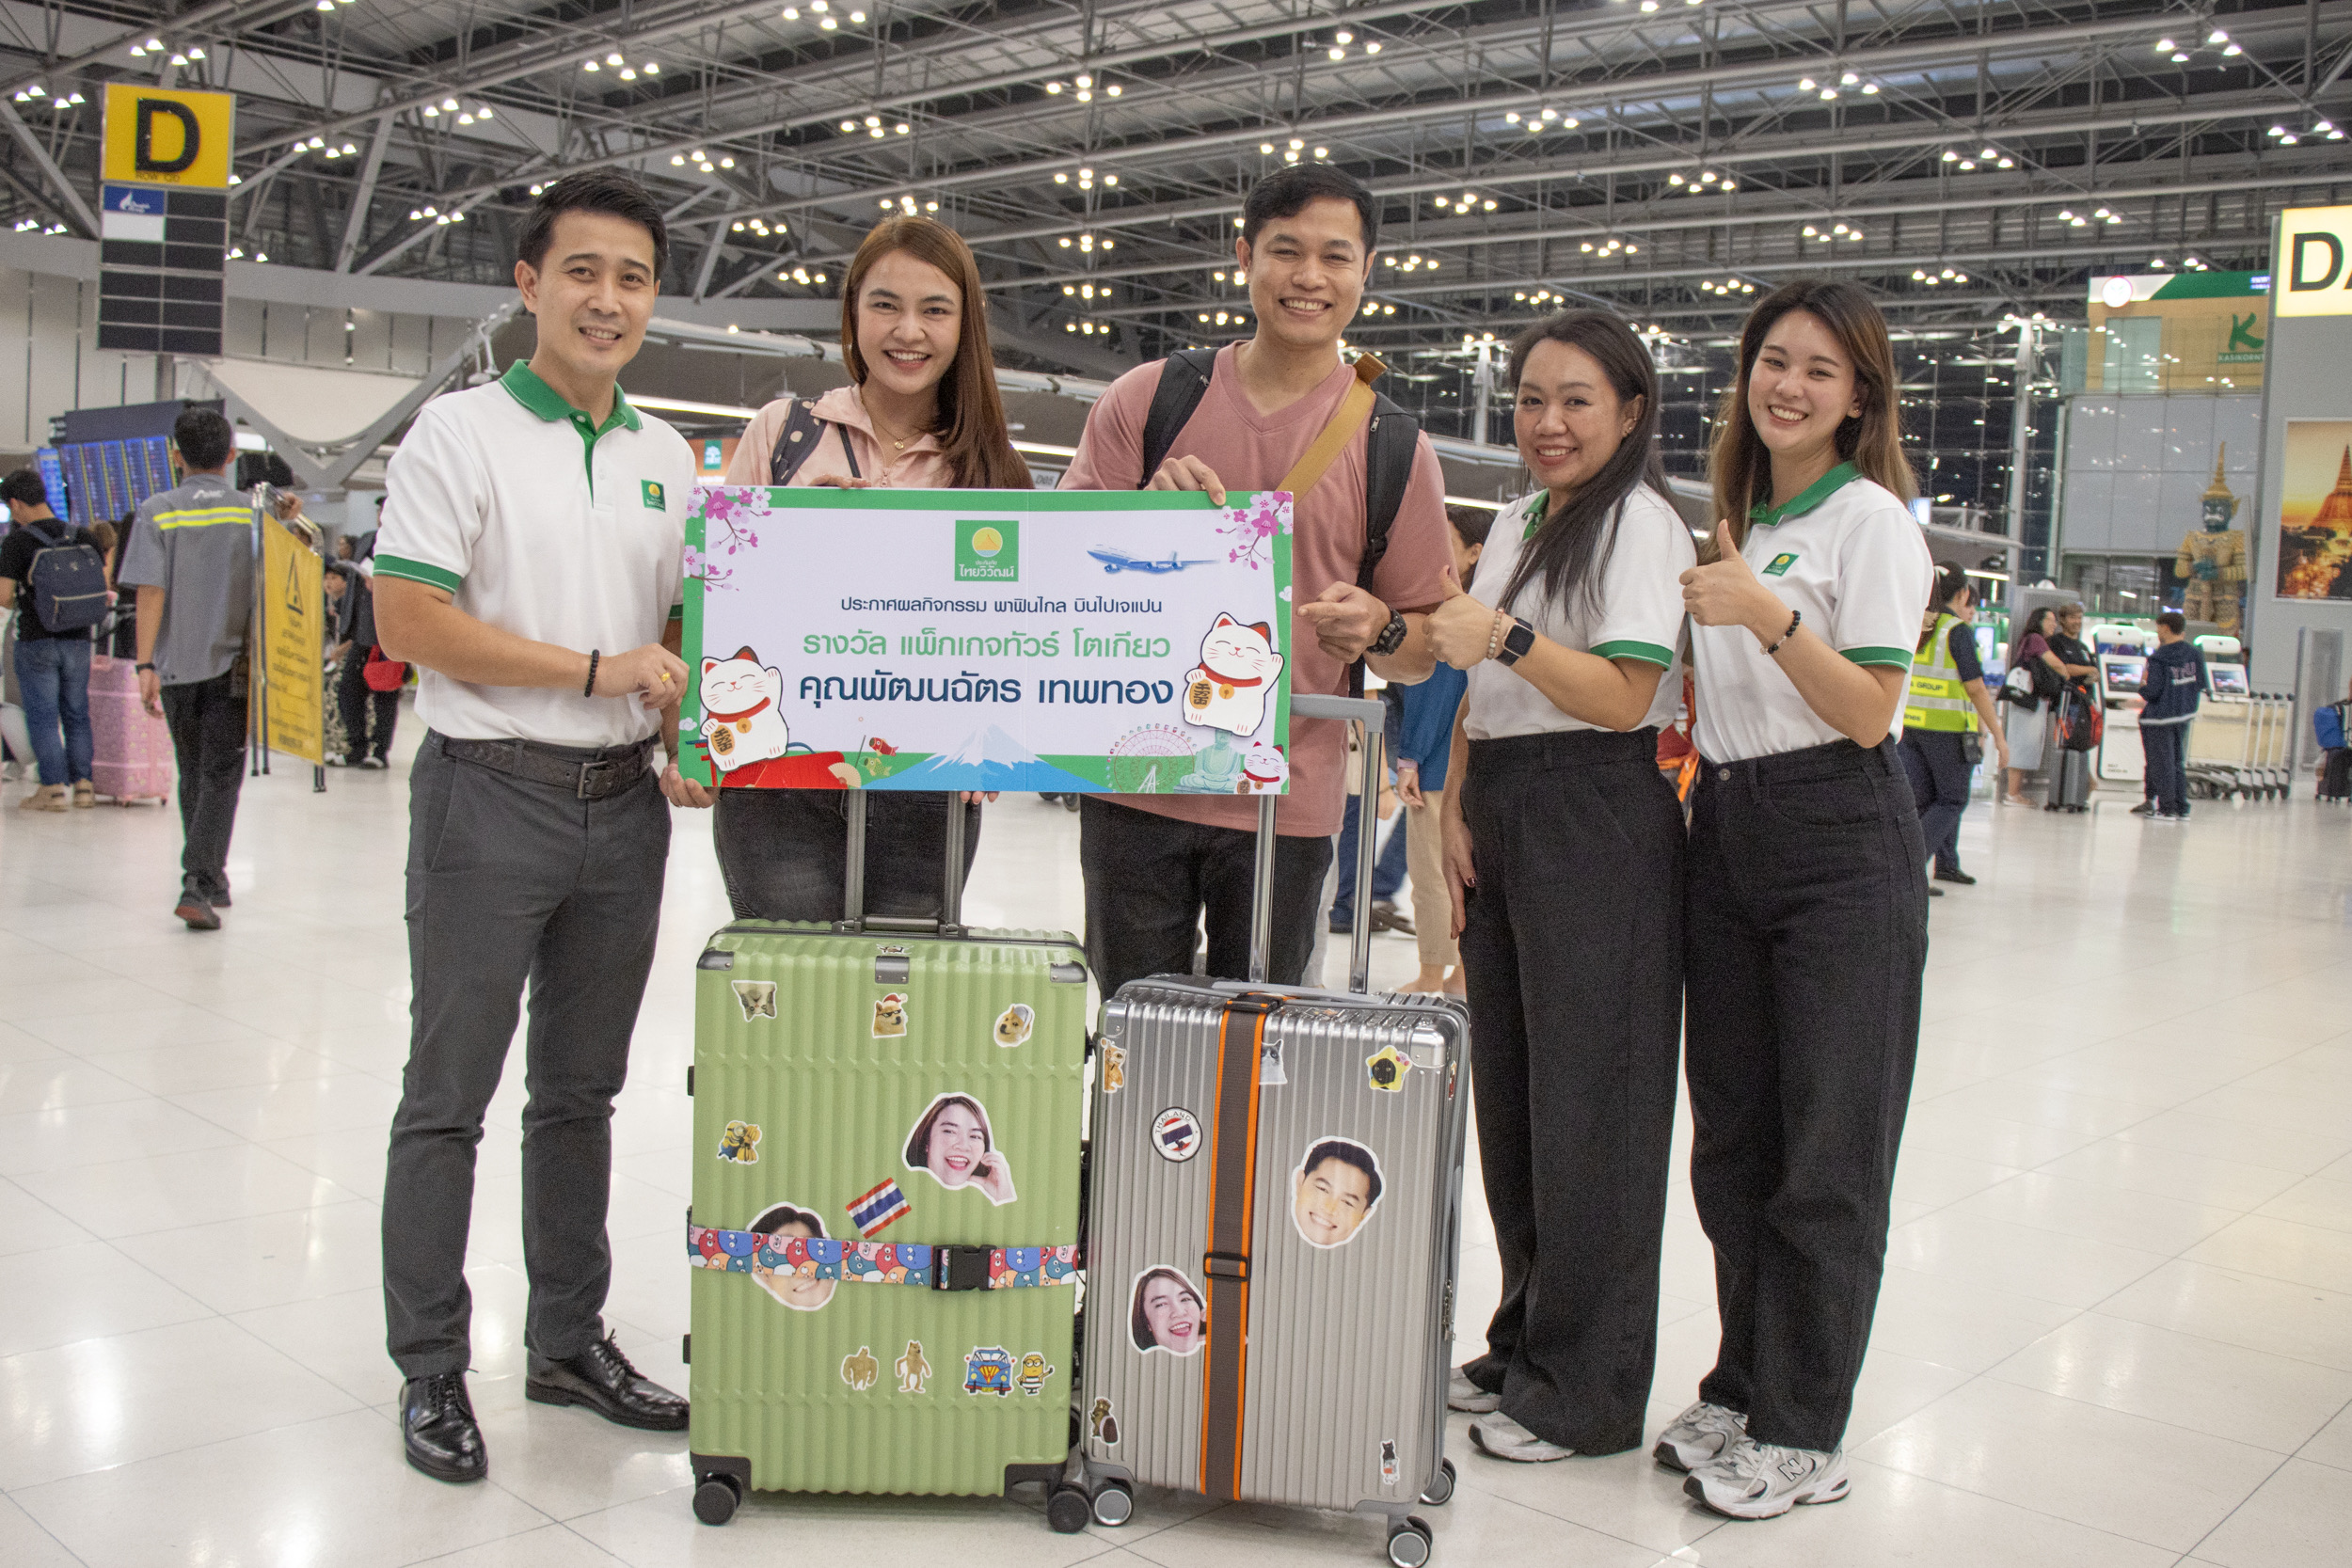 ประกันภัยไทยวิวัฒน์ มอบรางวัลลูกค้าประกันเดินทางต่างประเทศผู้โชคดีในแคมเปญ “พาฟินไกล บินไปเจแปน” รวมมูลค่ากว่า 100,000 บาท